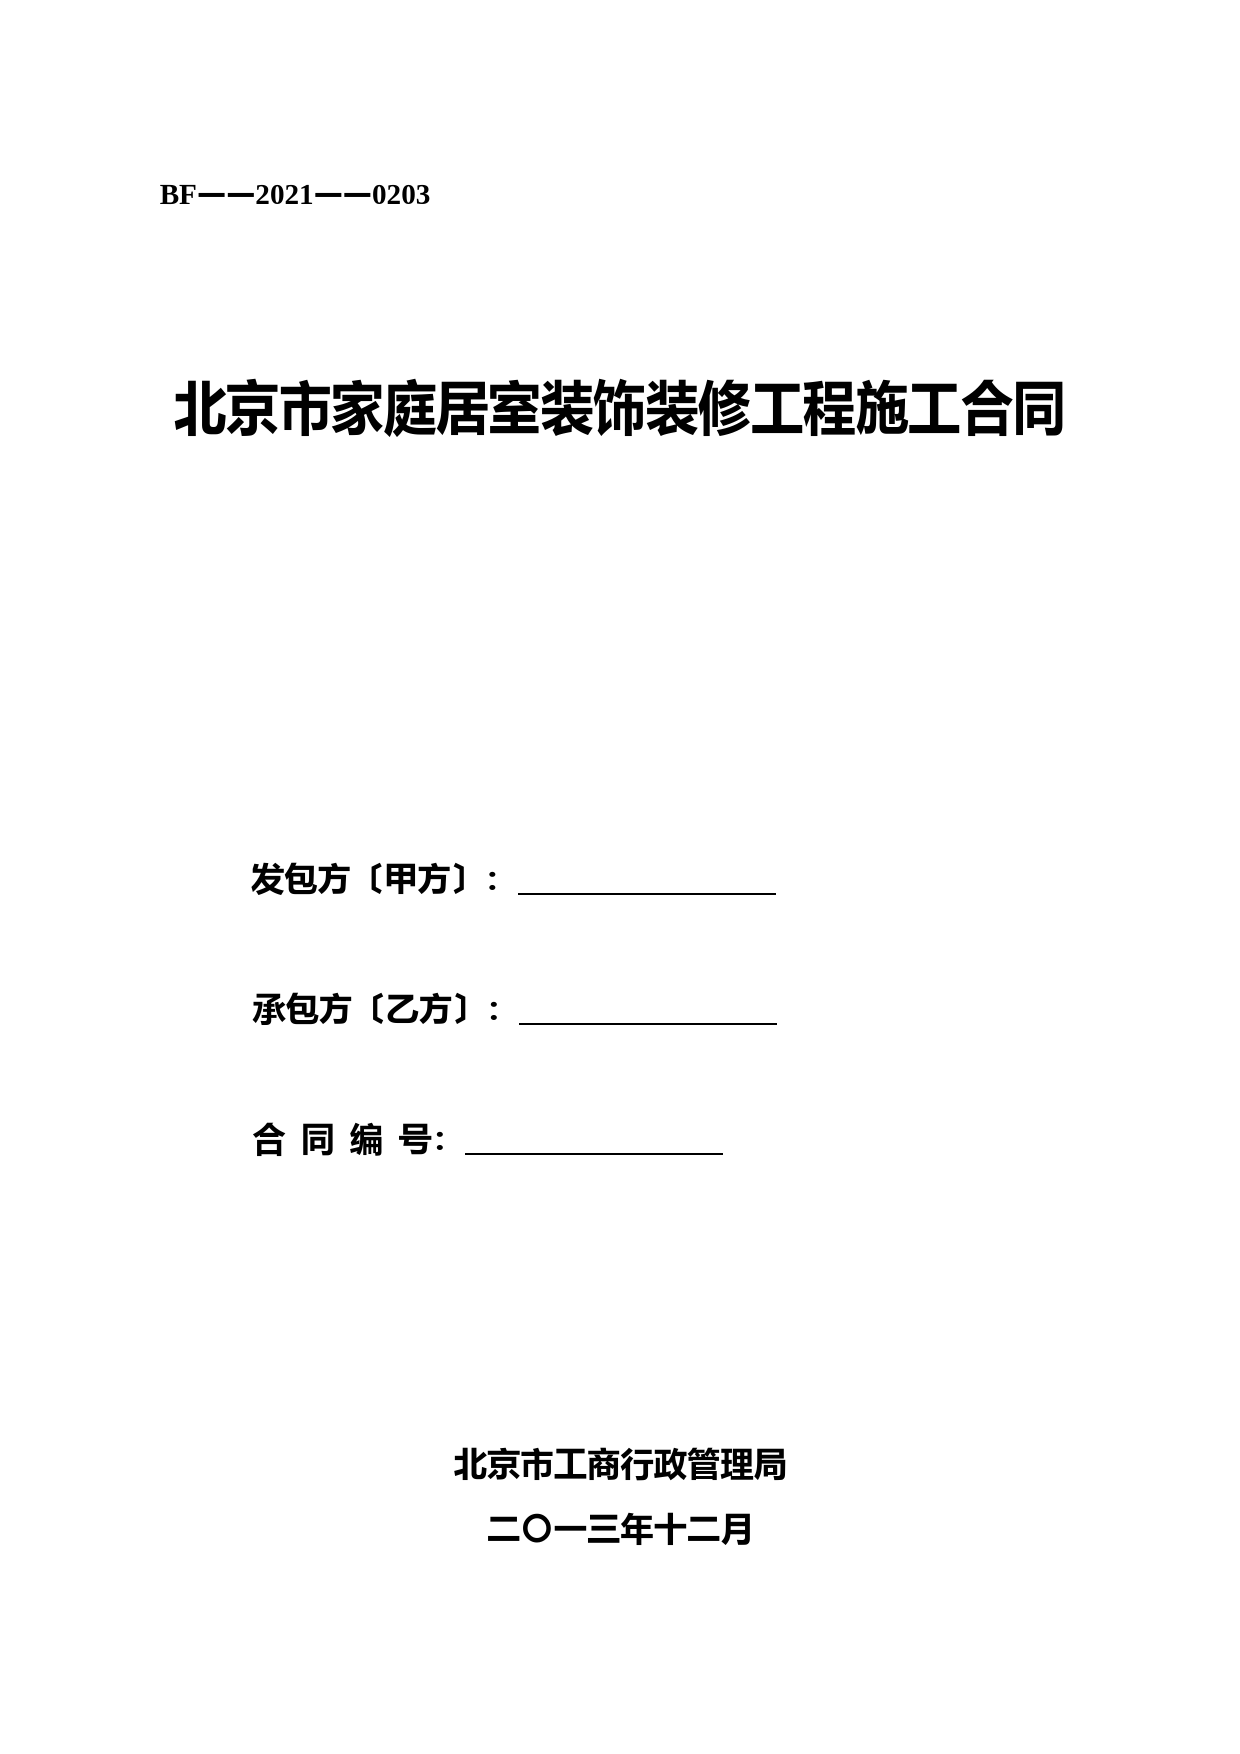 北京市家庭居室装饰装修工程施工合同(2021版) (1)